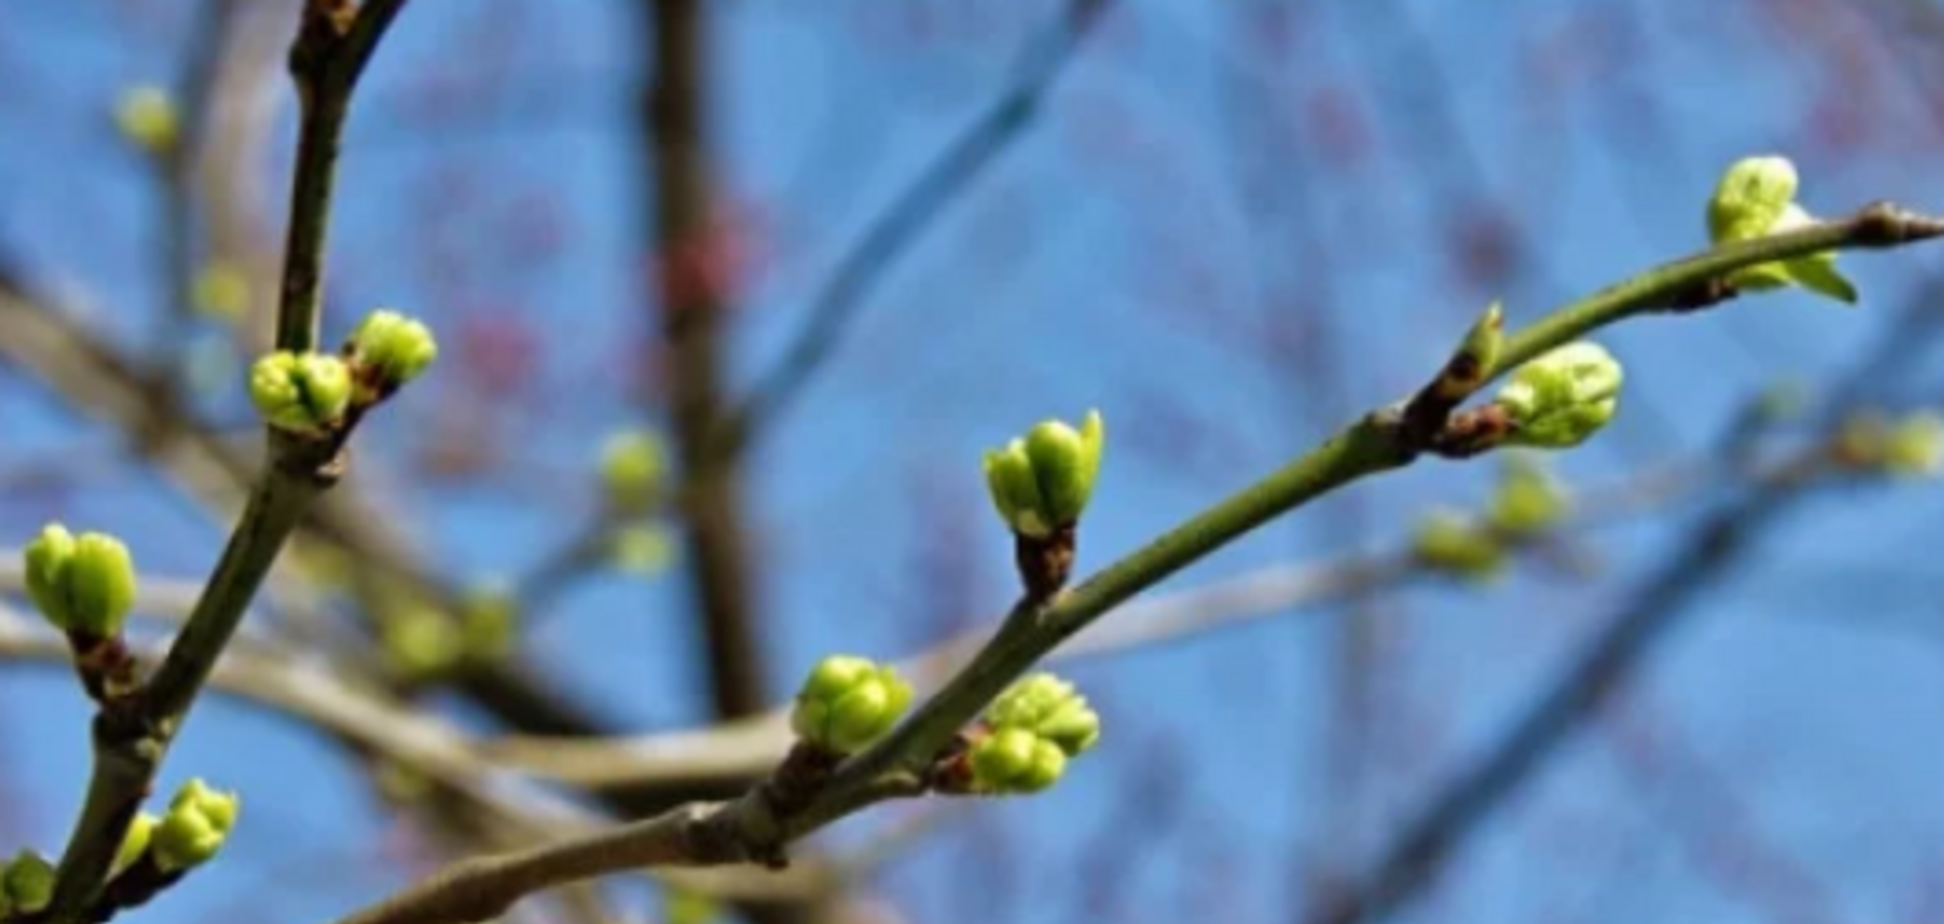 Ворвалась весна: синоптики дали теплый прогноз по Украине